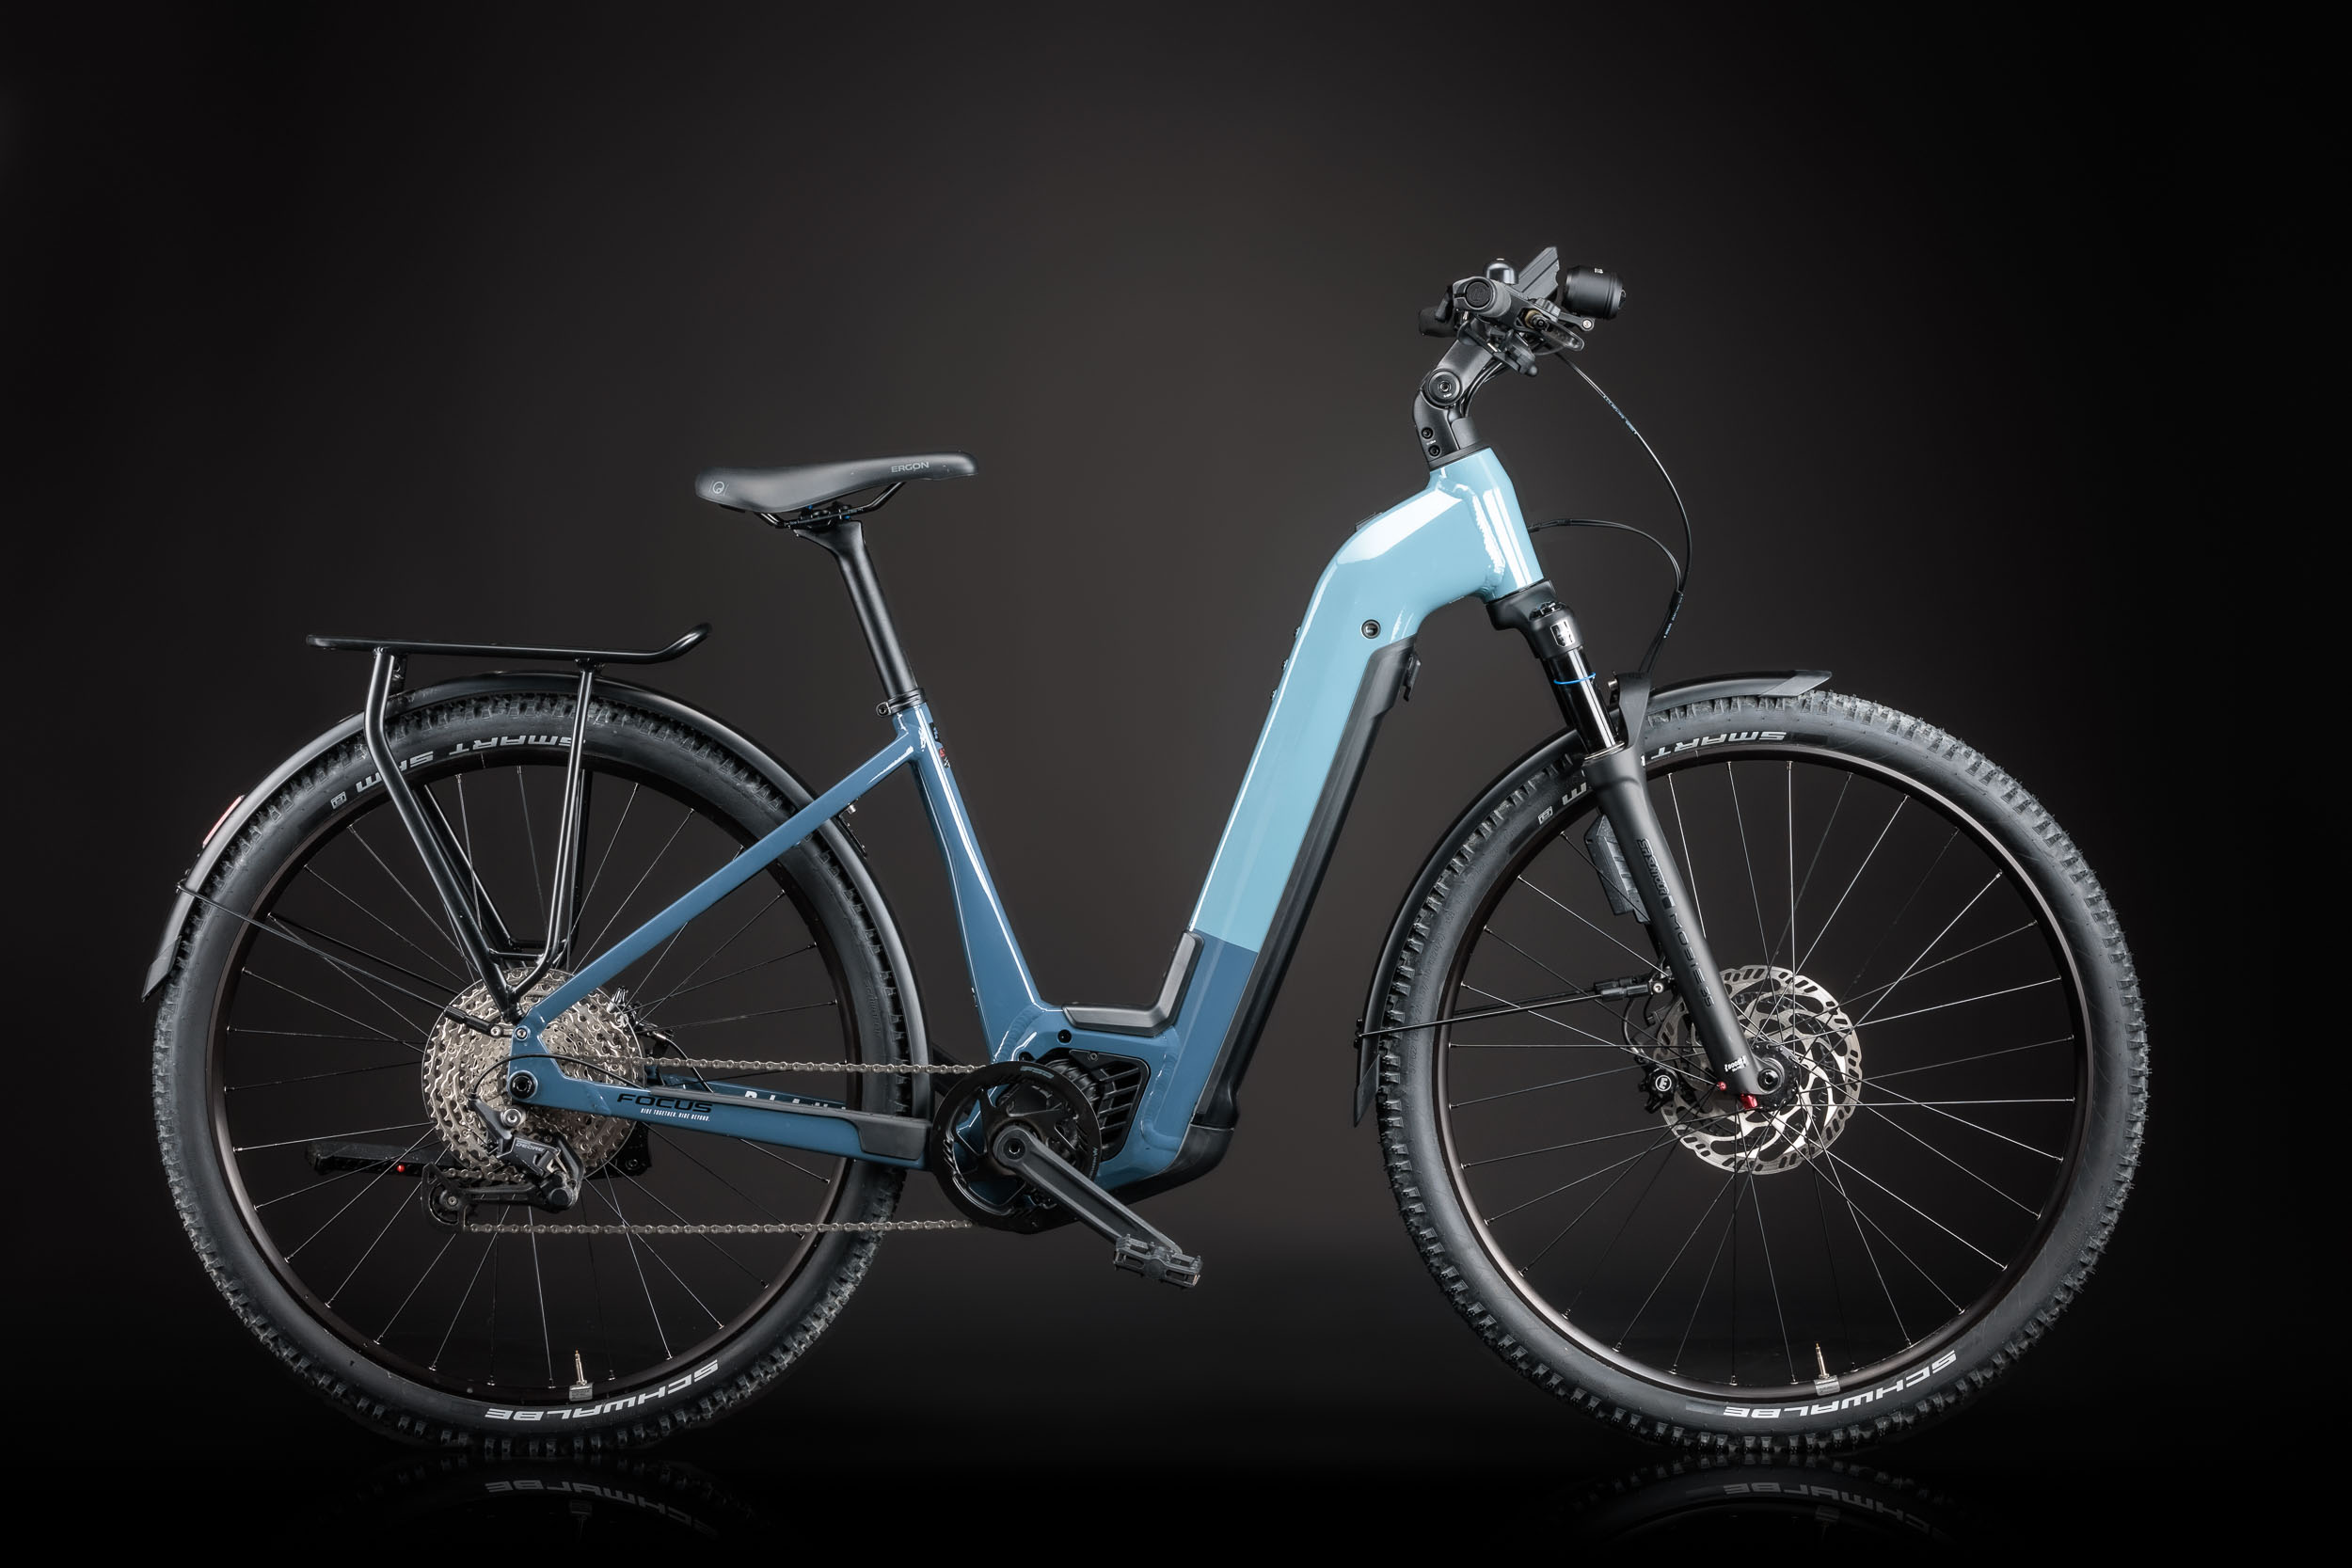 Test du système ABS "Touring" Bosch-Magura pour vélo électrique sur le Focus Planet² 6.9 ABS